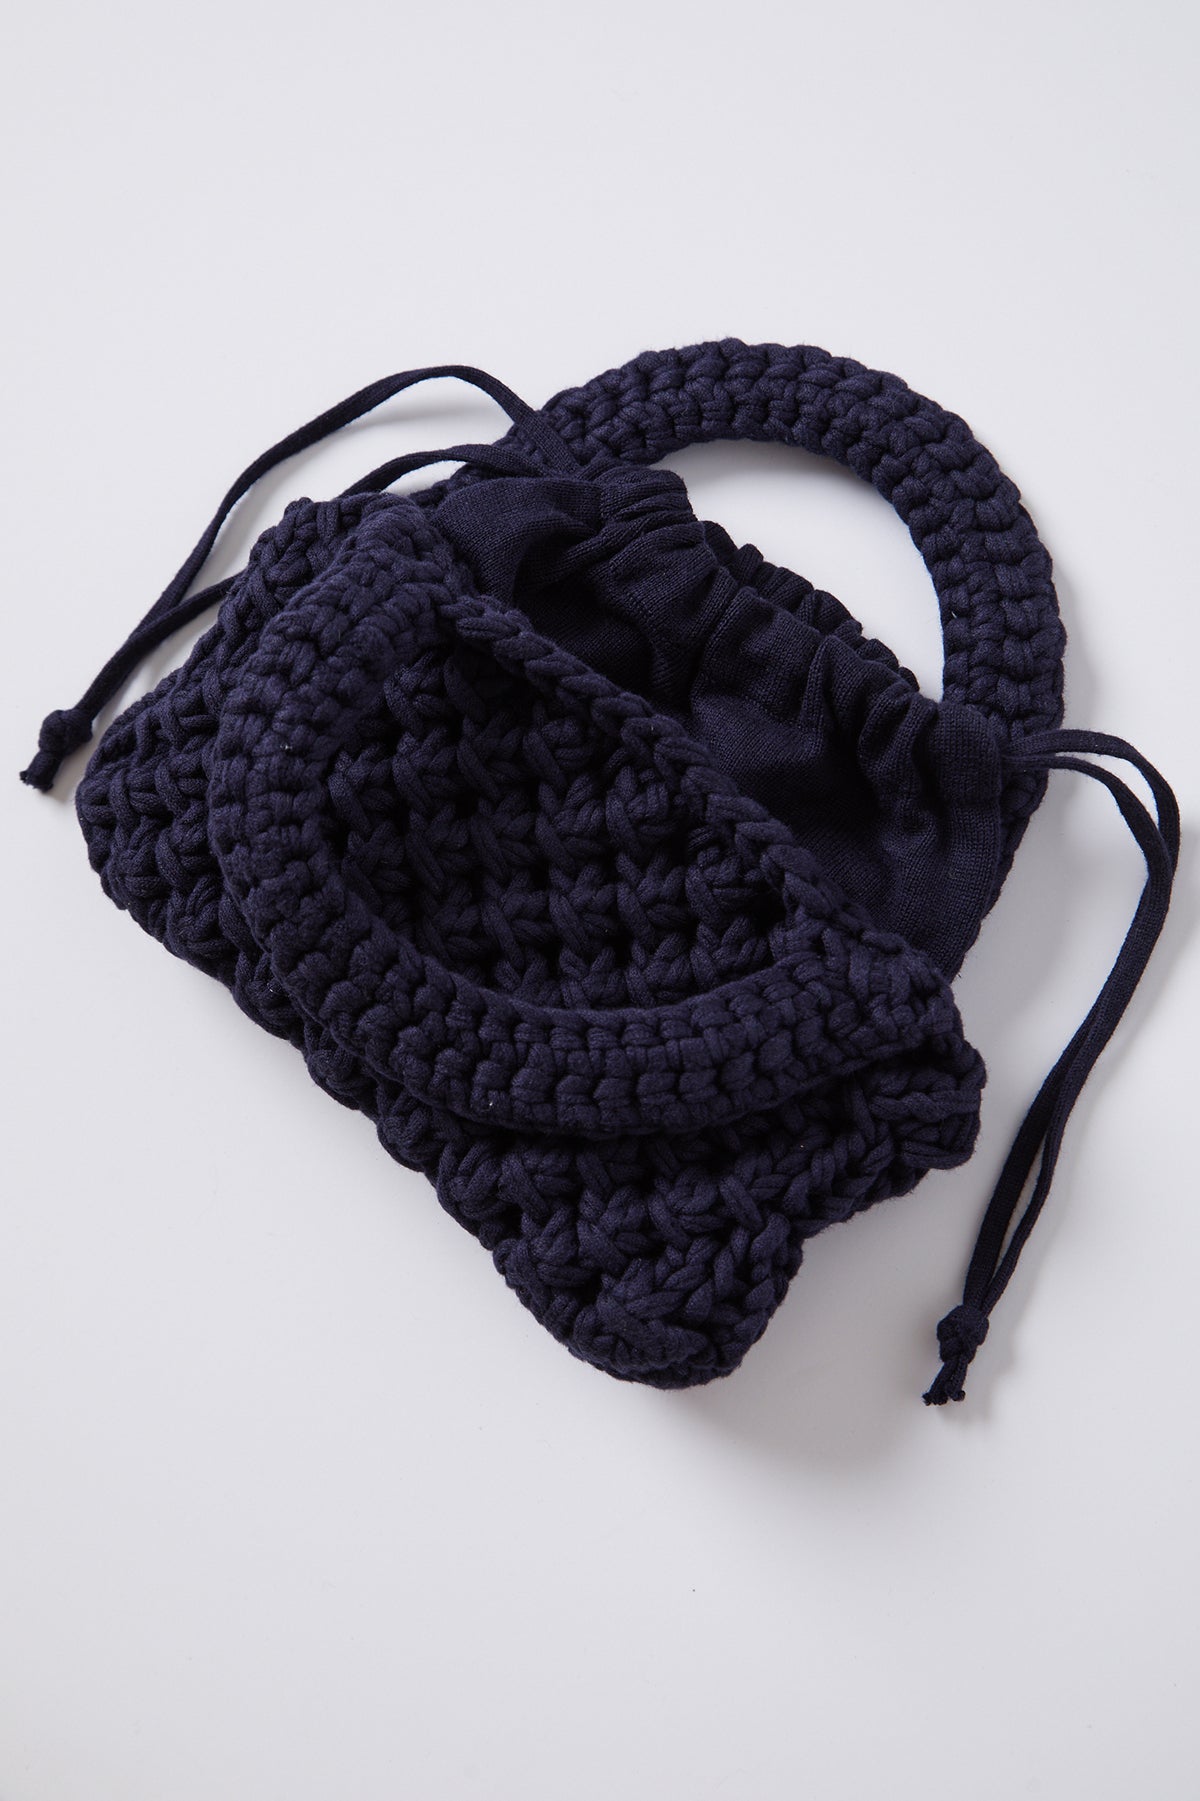 Bennie Crochet Bag in navy detail-25994891624641